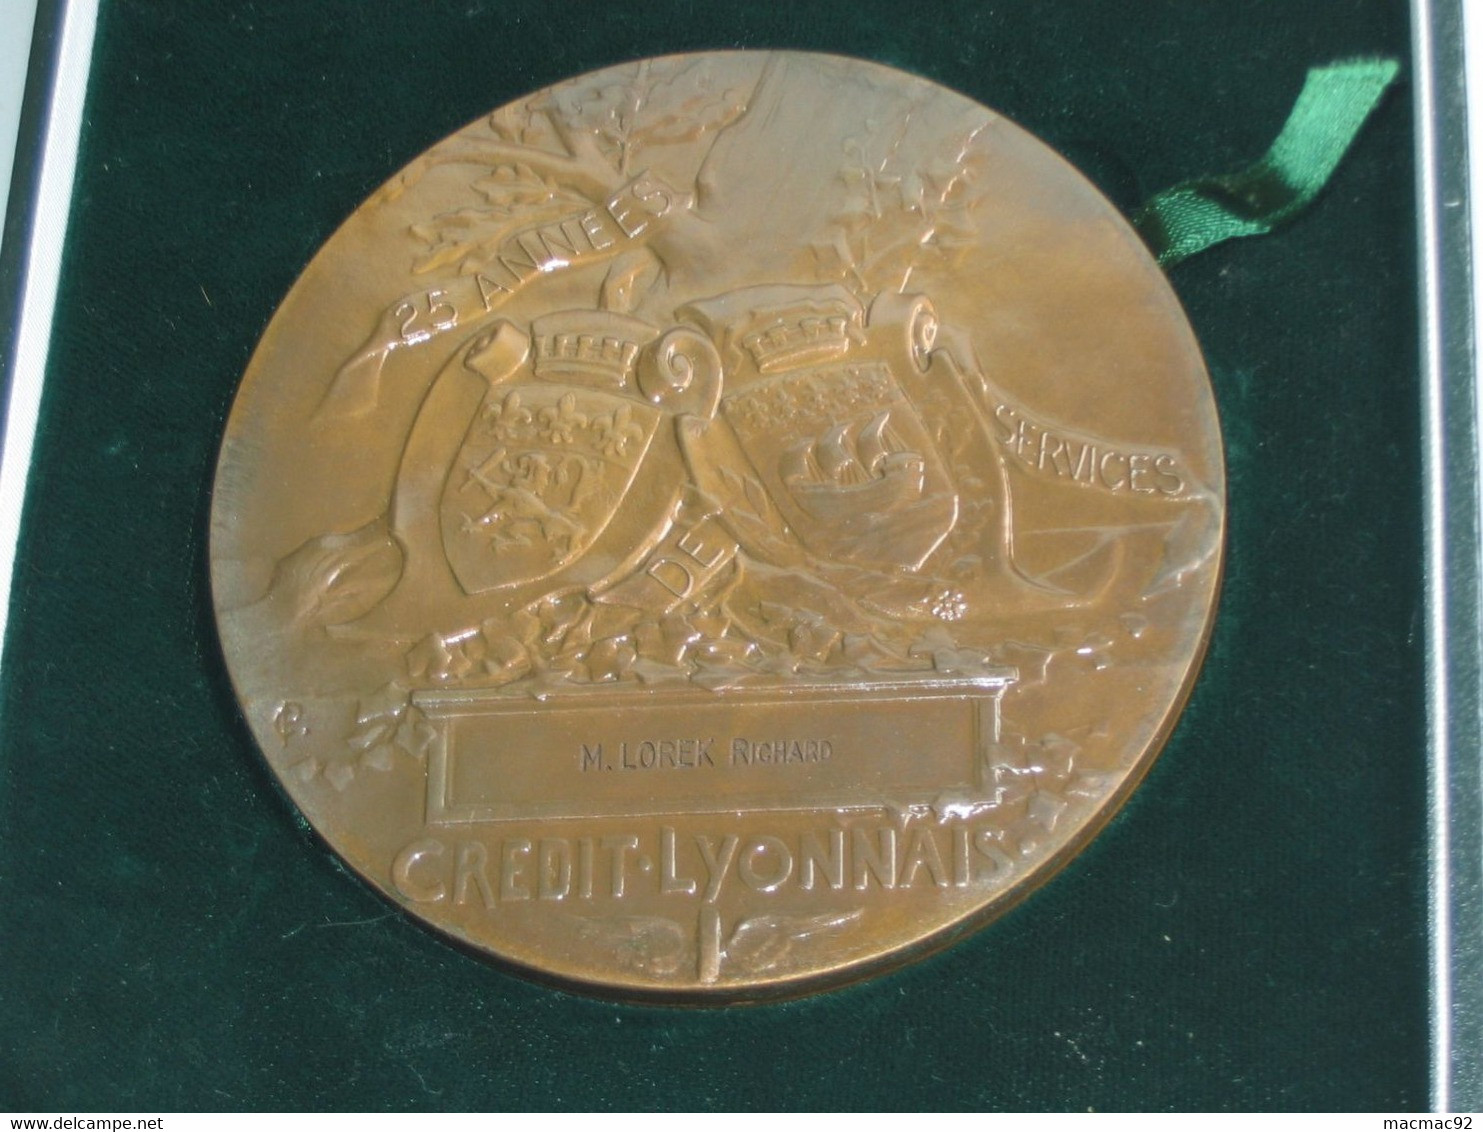 Imposante Médaille HENRI GERMAIN Fondateur Du Crédit Lyonnais  **** EN ACHAT IMMEDIAT **** - Professionnels / De Société